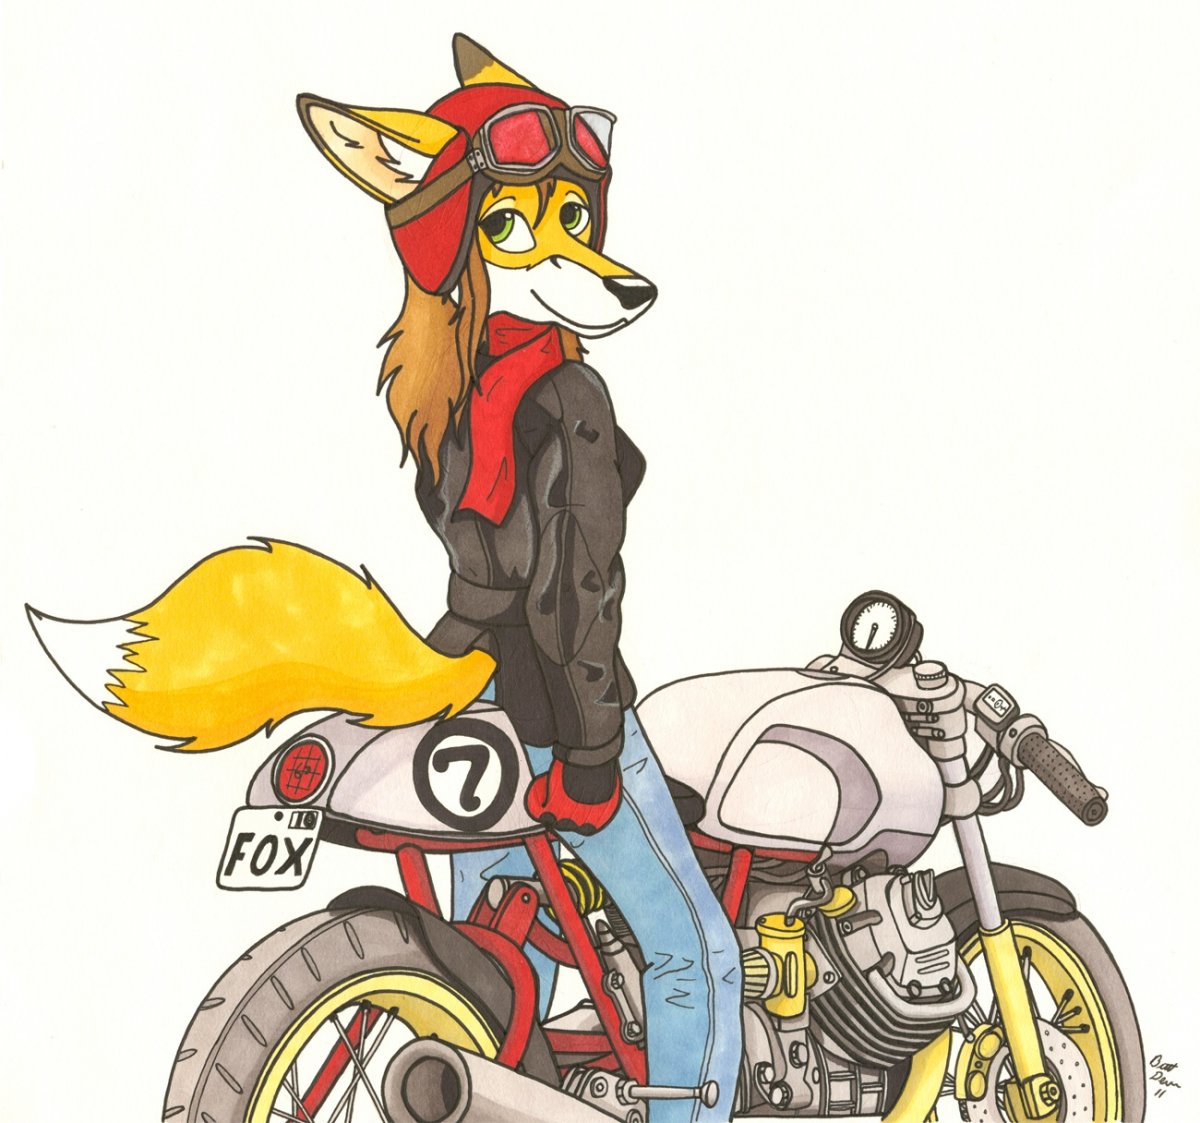 Волк на мотоцикле